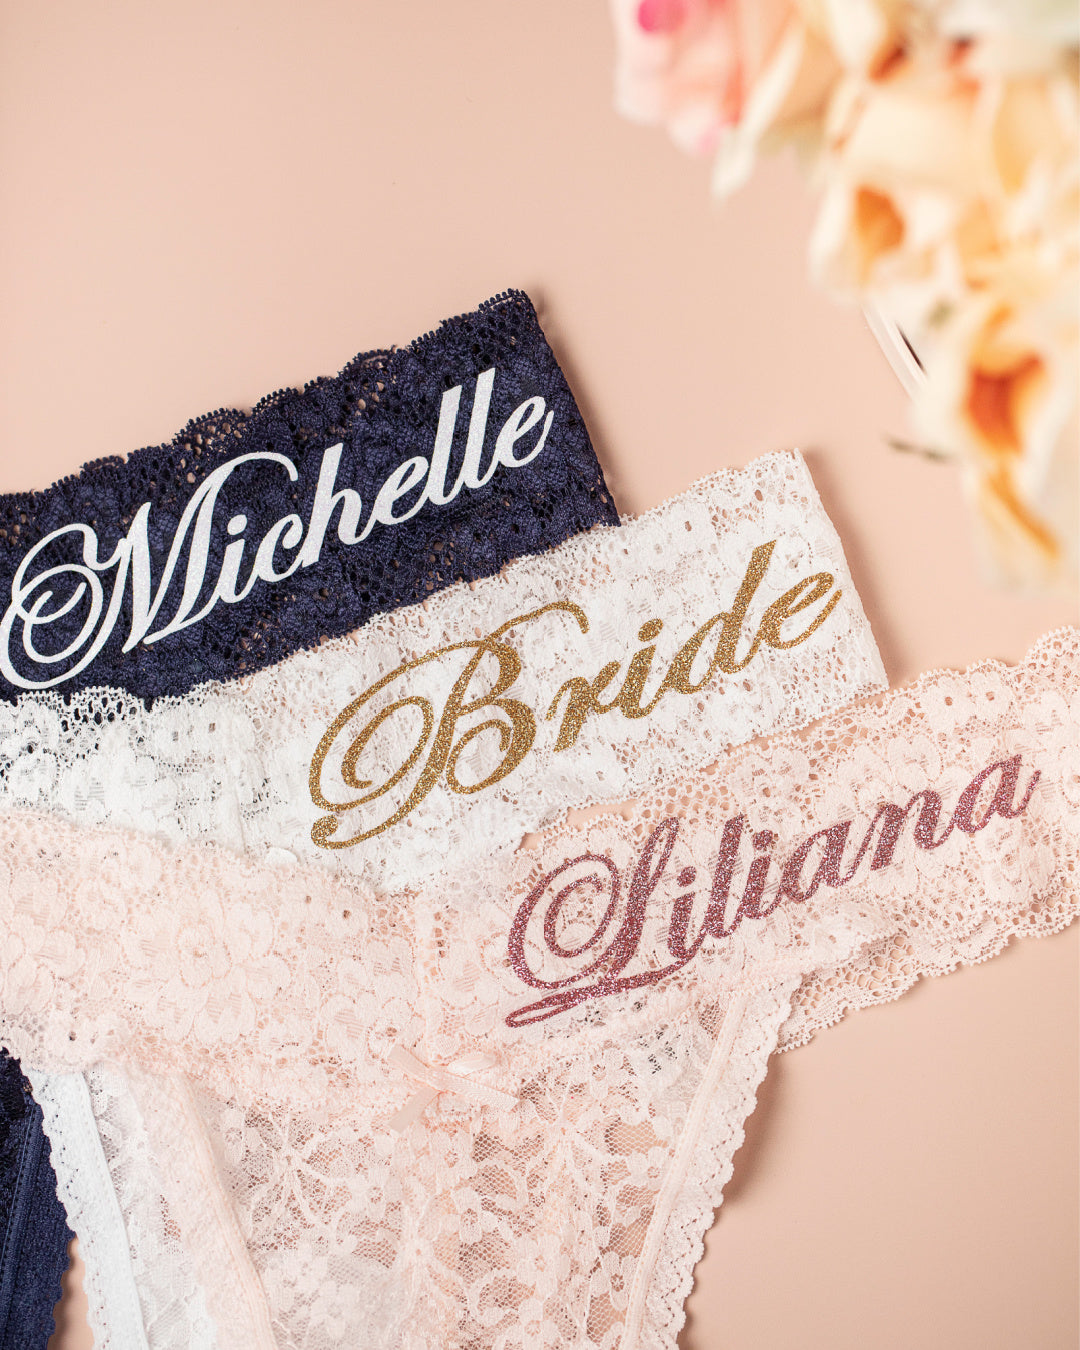 Mrs. Bridal Panties, bride panties, honeymoon panties, bride gift